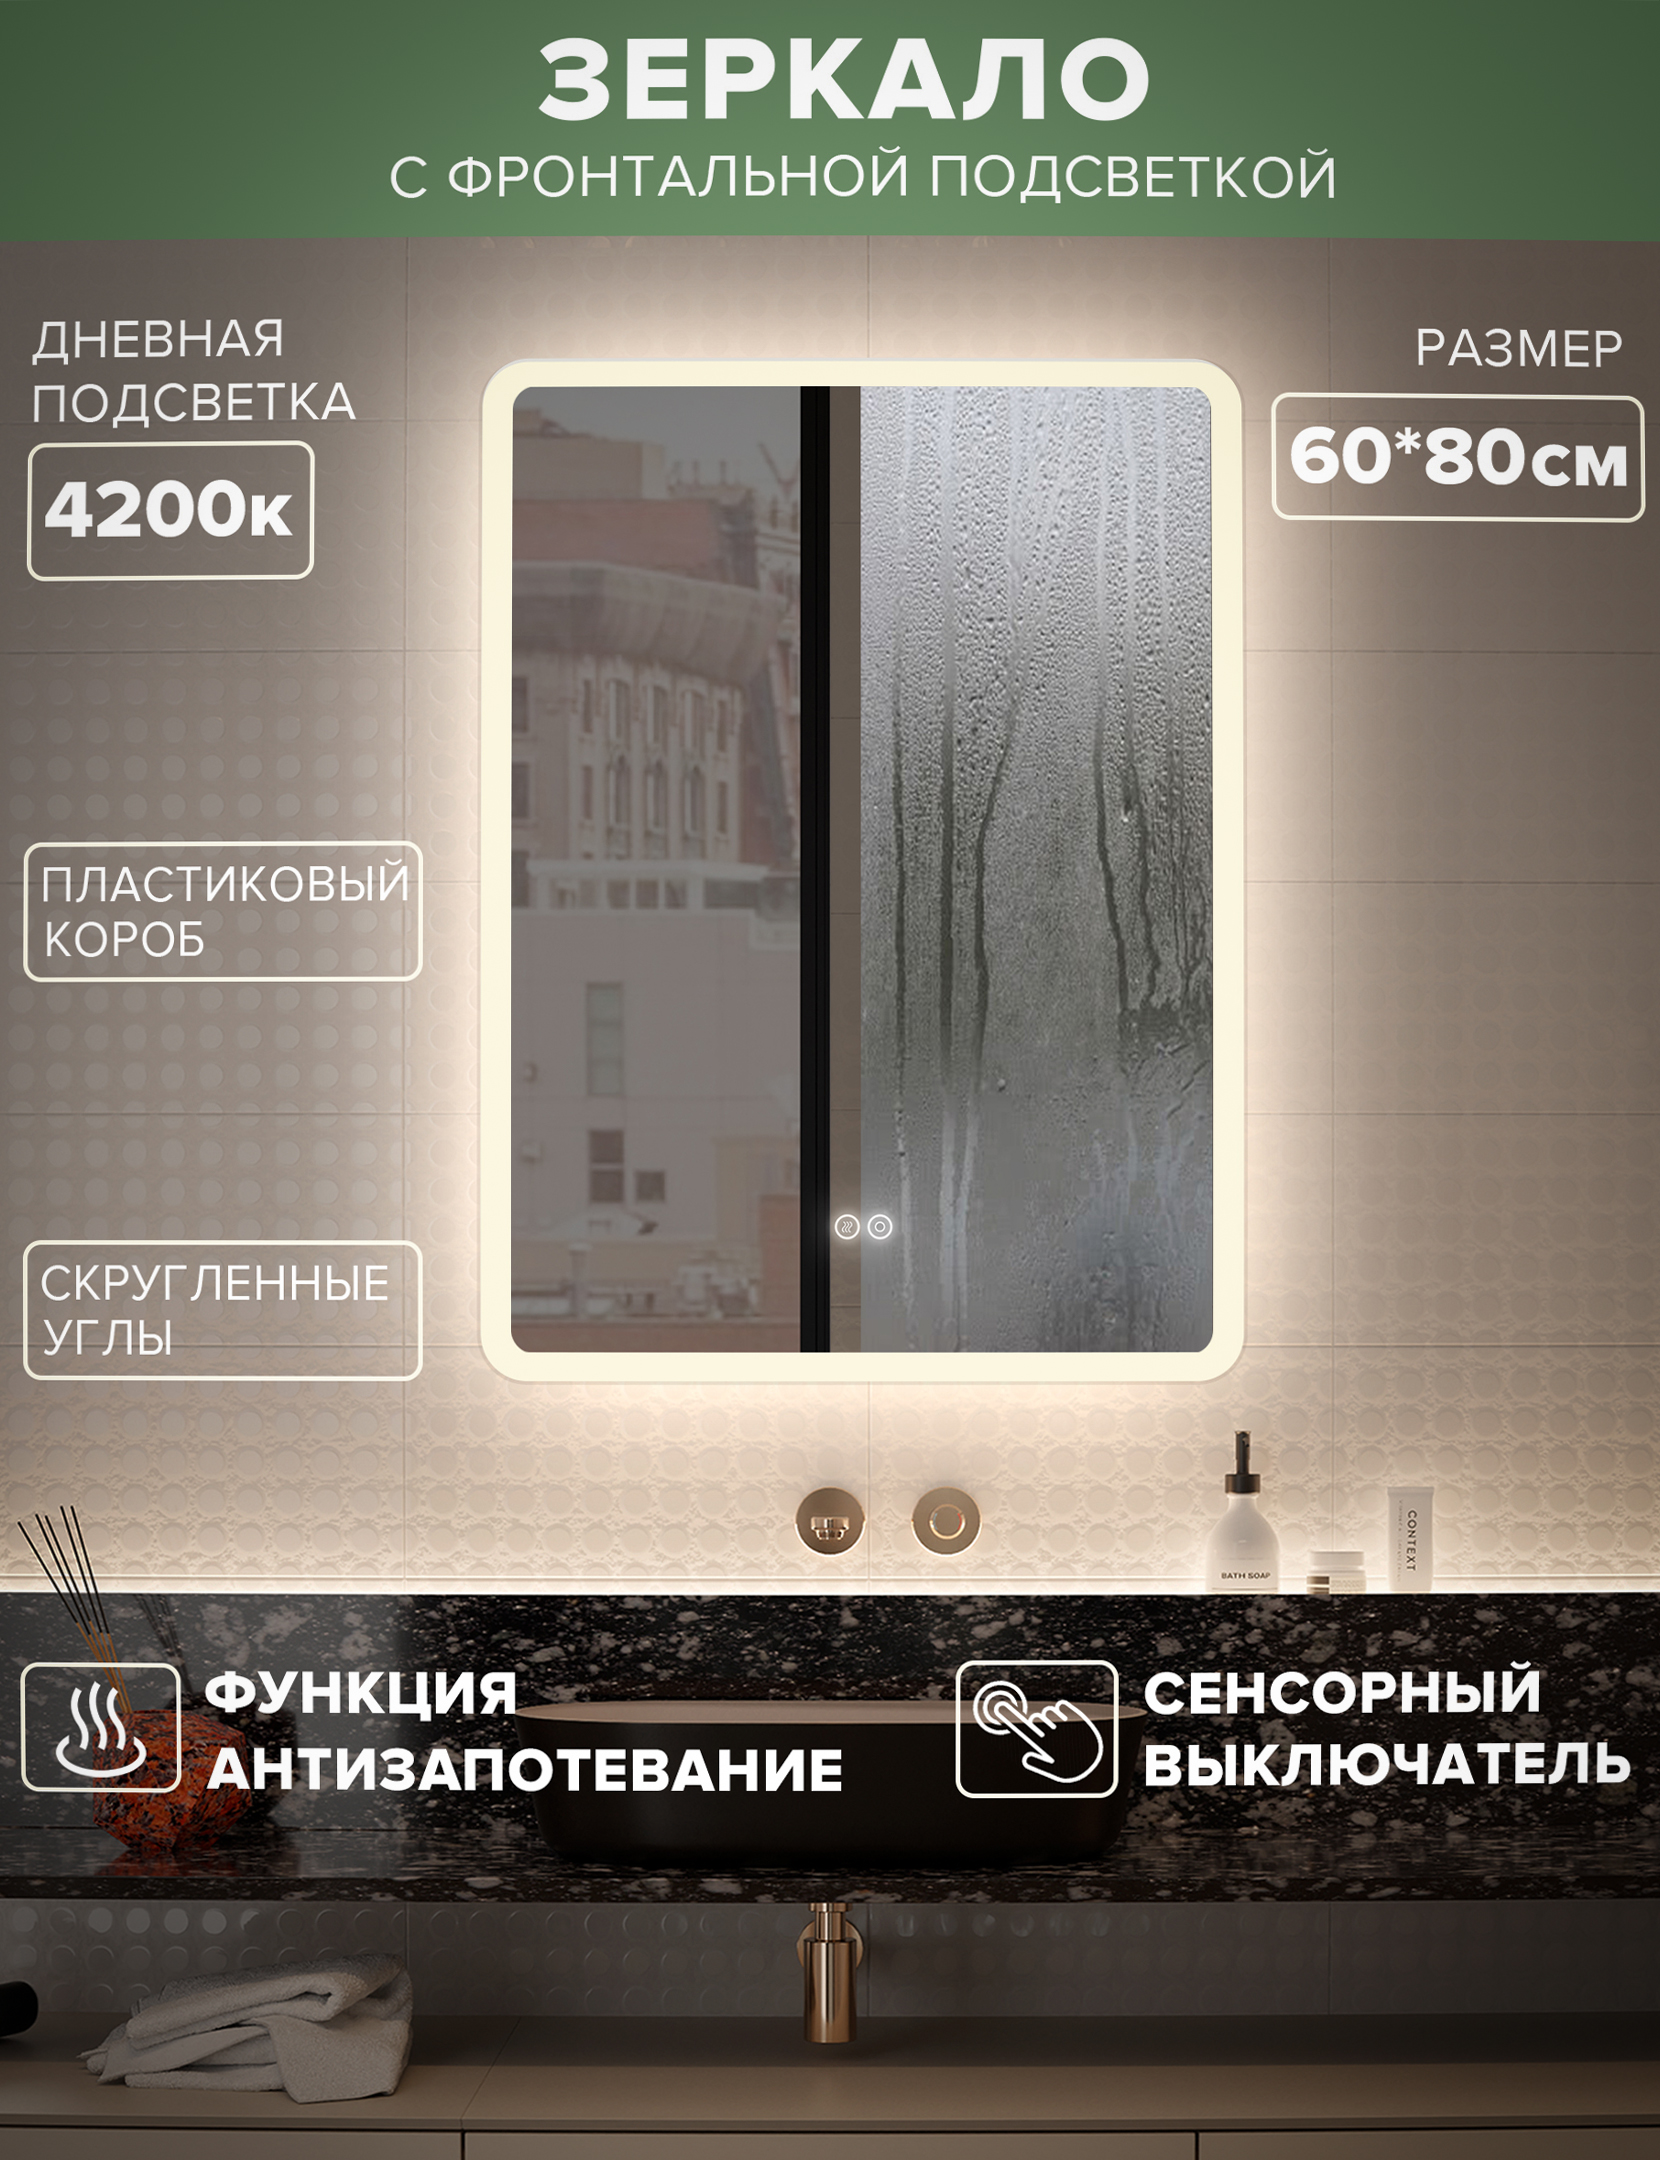 Зеркало для ванной Alfa Mirrors MDi-68Ad дневная подсветка 4200К, прямоугольное 60*80 см